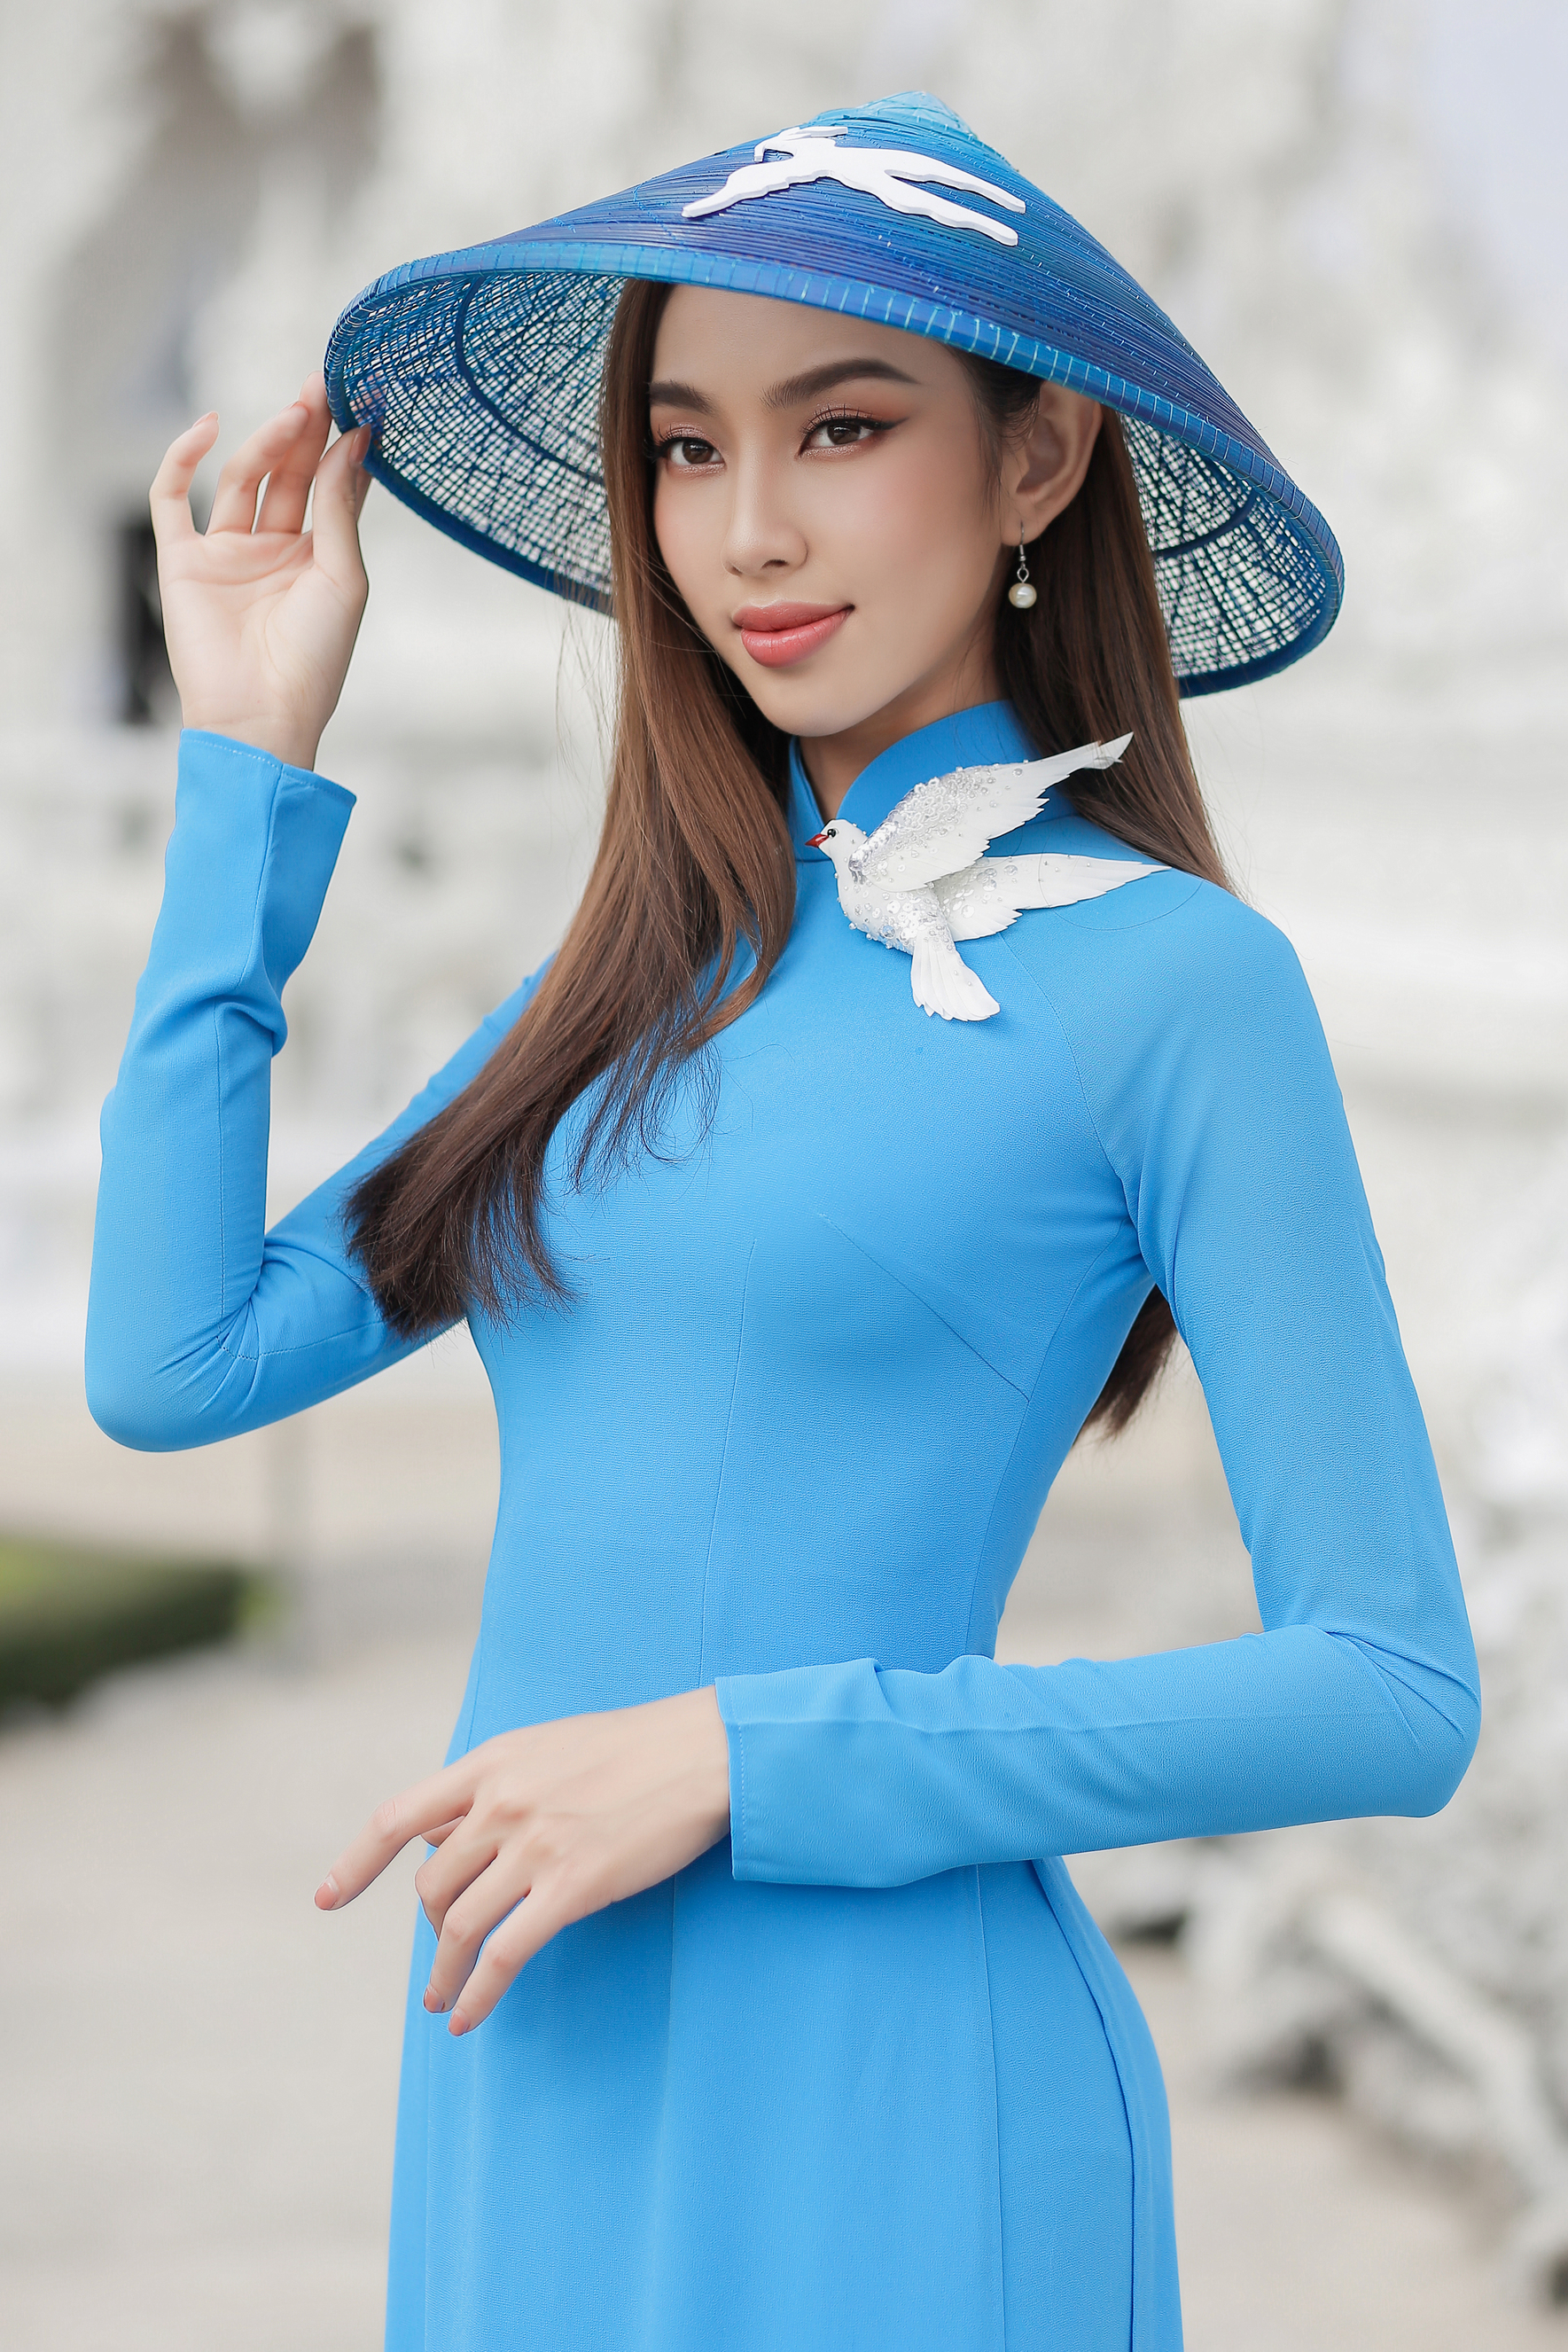 Ngây ngất ngắm Hoa hậu Nguyễn Thúc Thùy Tiên mặc áo dài duyên dáng trên đất Thái Lan - Ảnh 2.